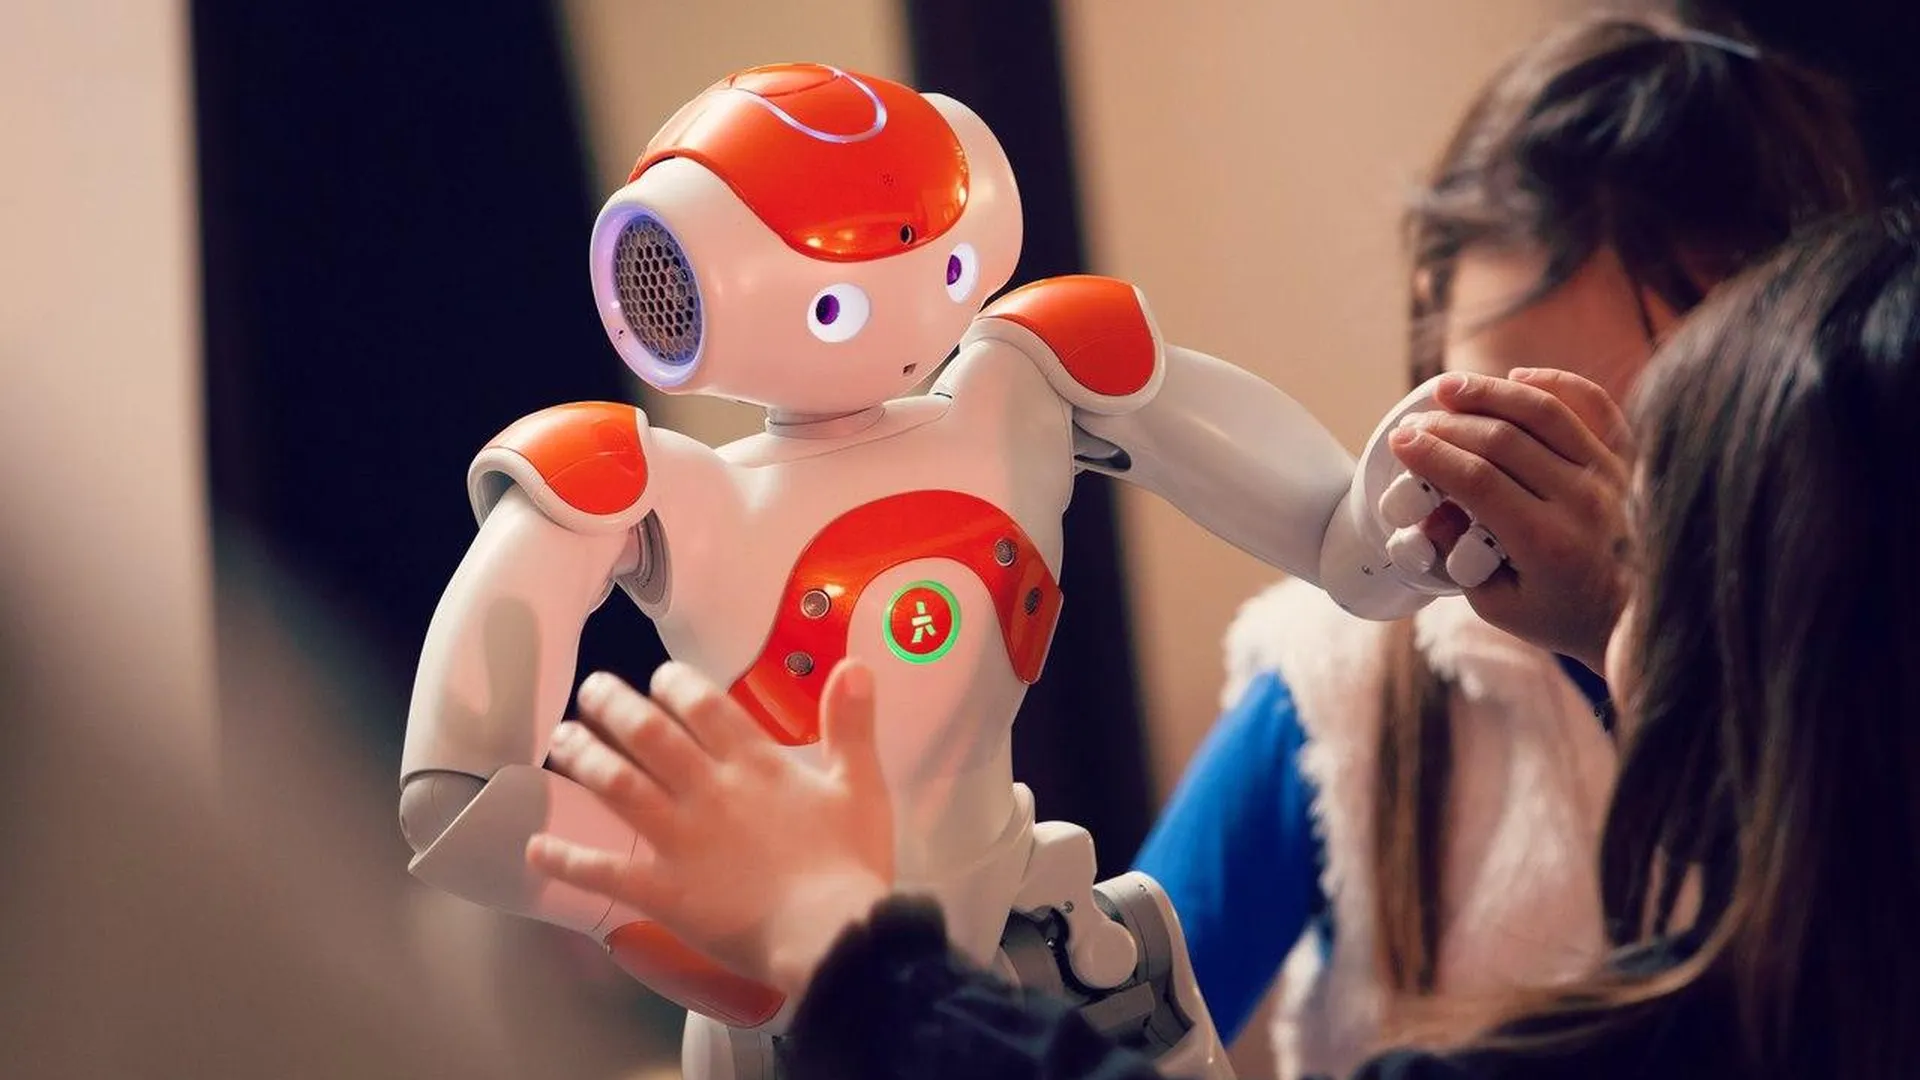 страница Фестиваля робототехники #РобоСити2017 в соцсети Вконтакте